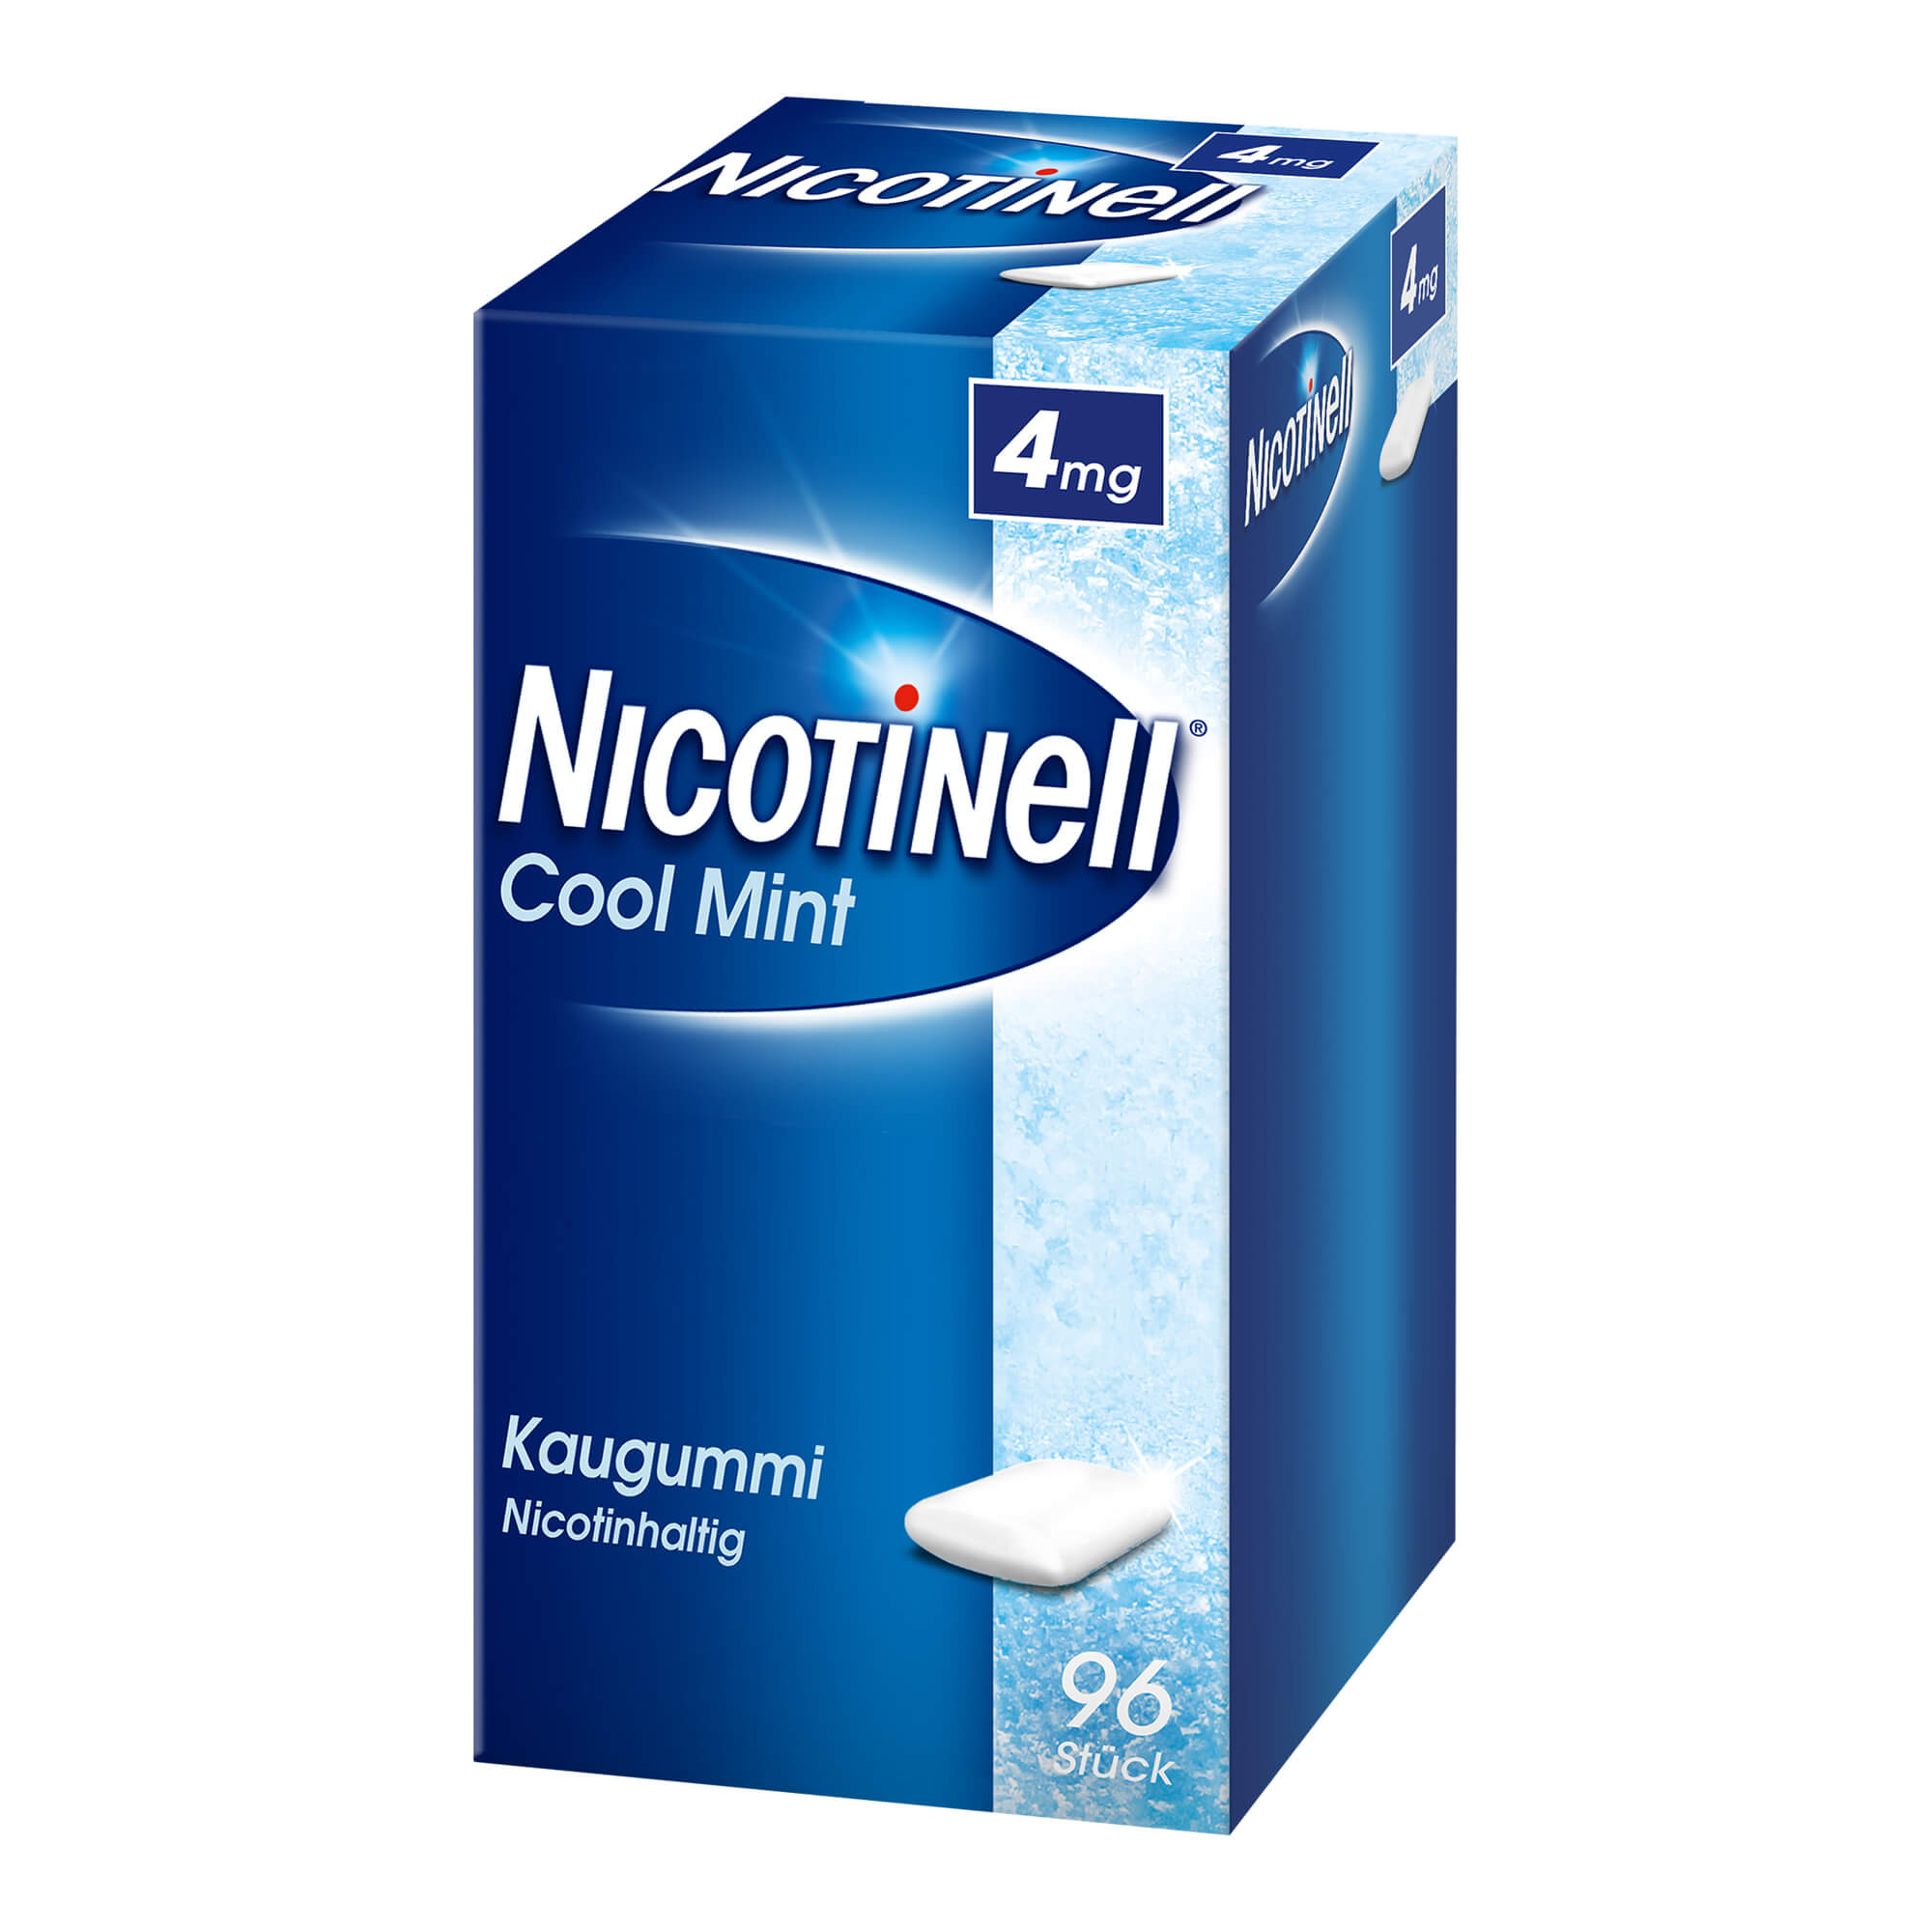 Zur Linderung von Nicotinentzugssymptomen, zur Unterstützung der Raucherentwöhnung bei Nicotinabhängigkeit. Mit Minz-Geschmack.